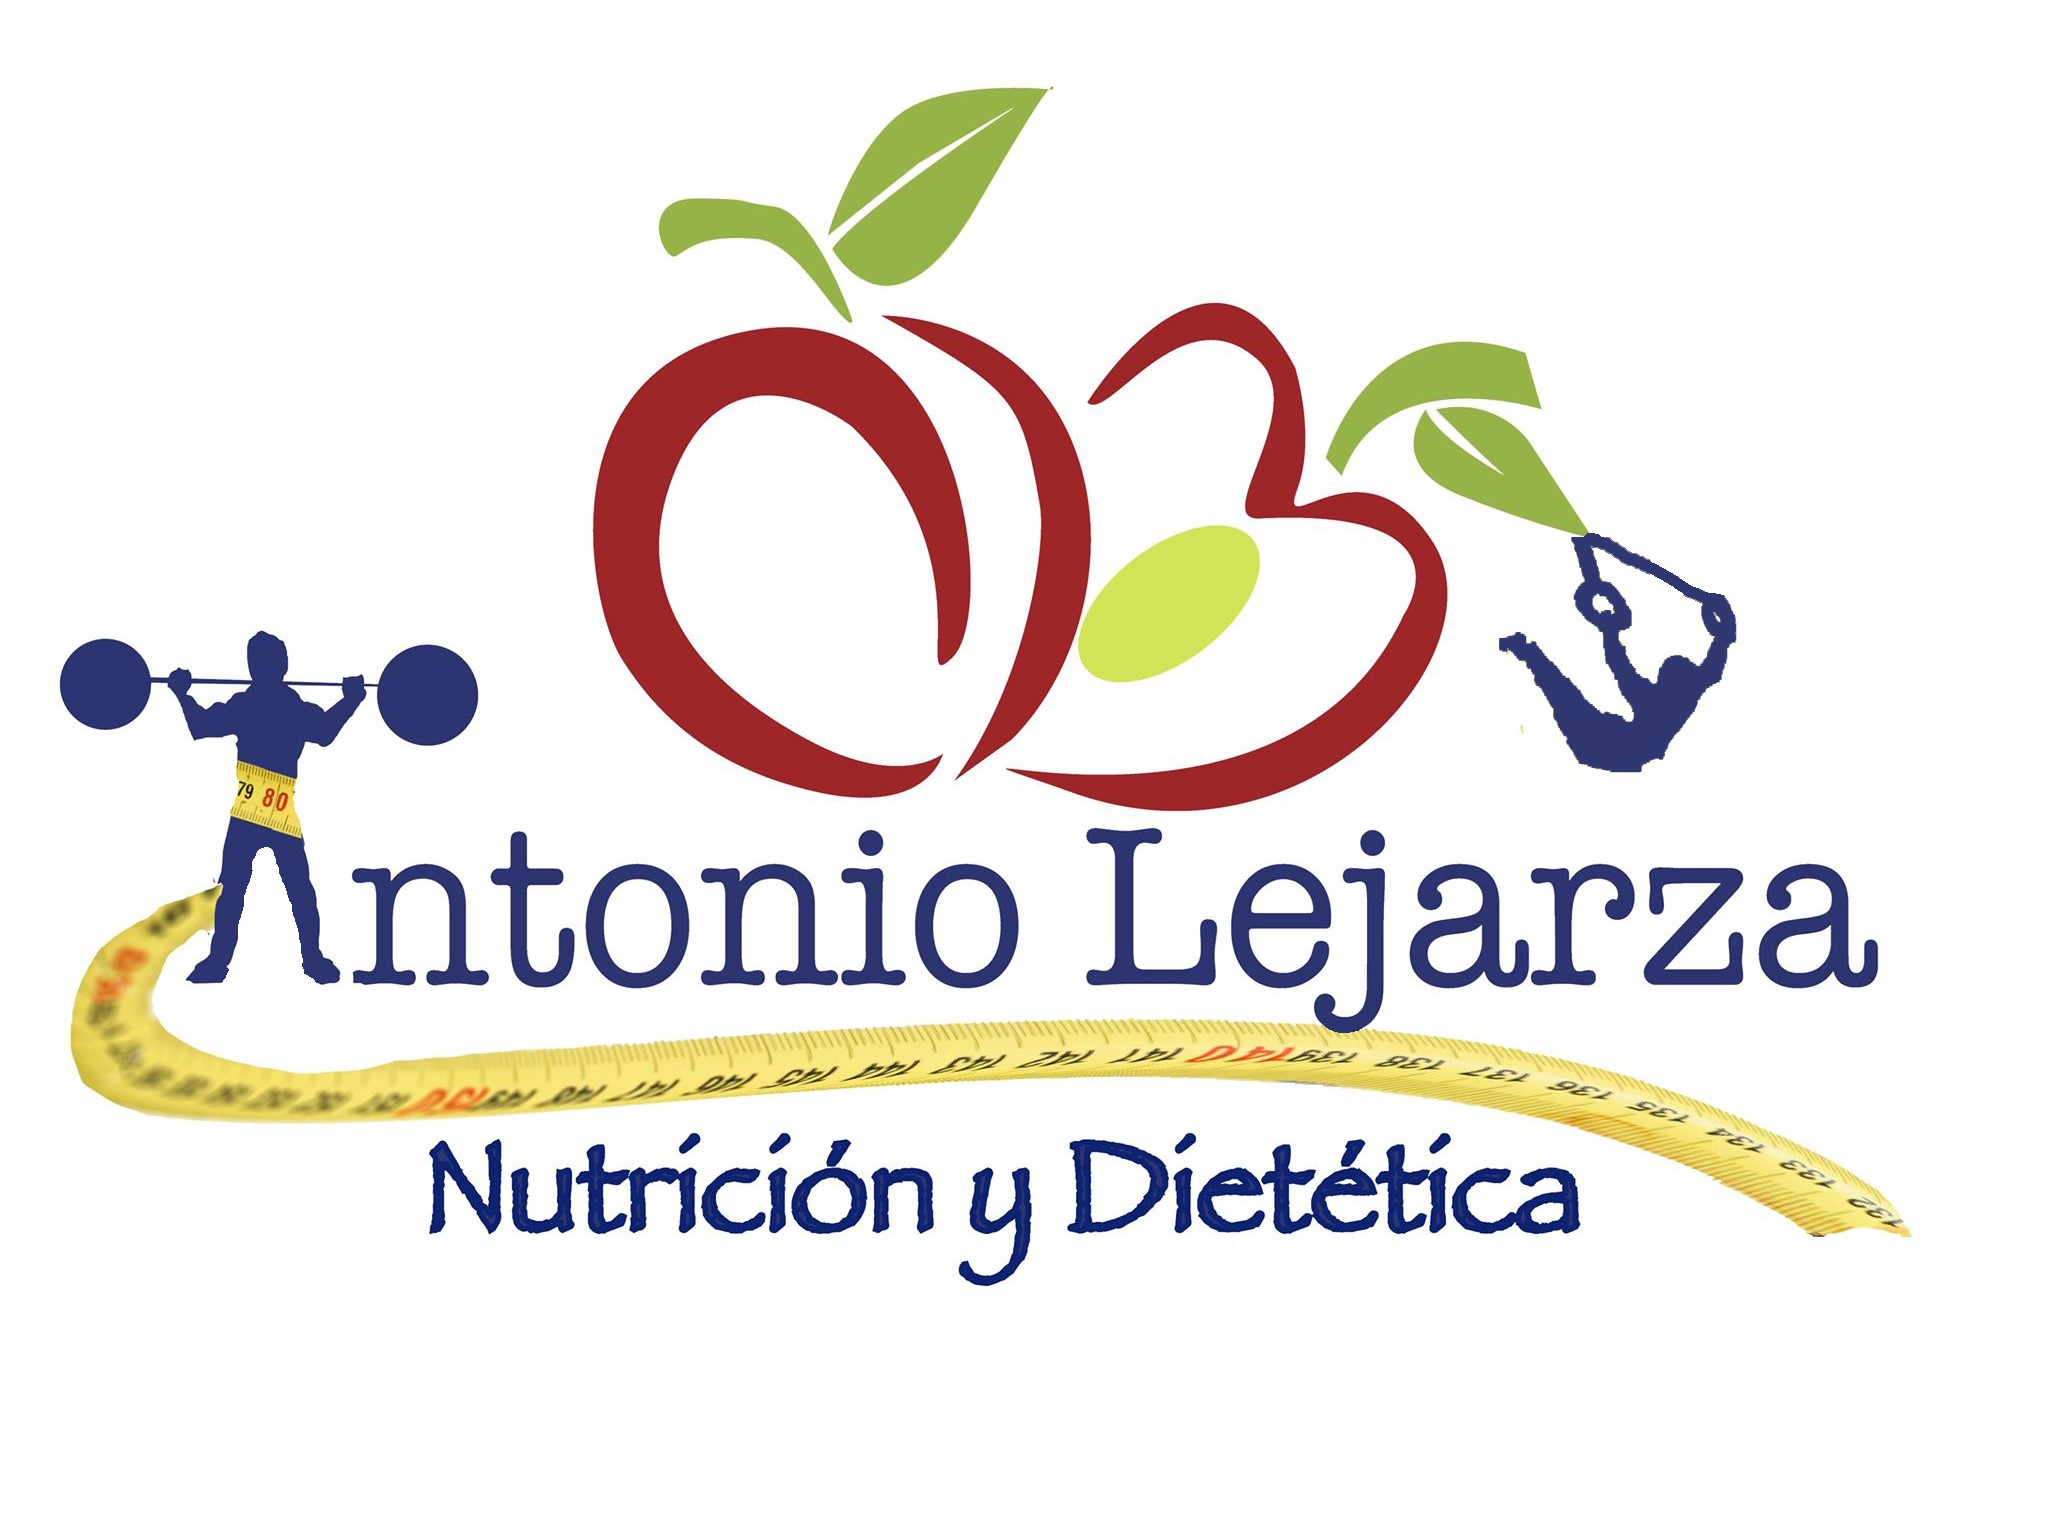 Antonio Lejarza, tu nutricionista - dietista en Zamora